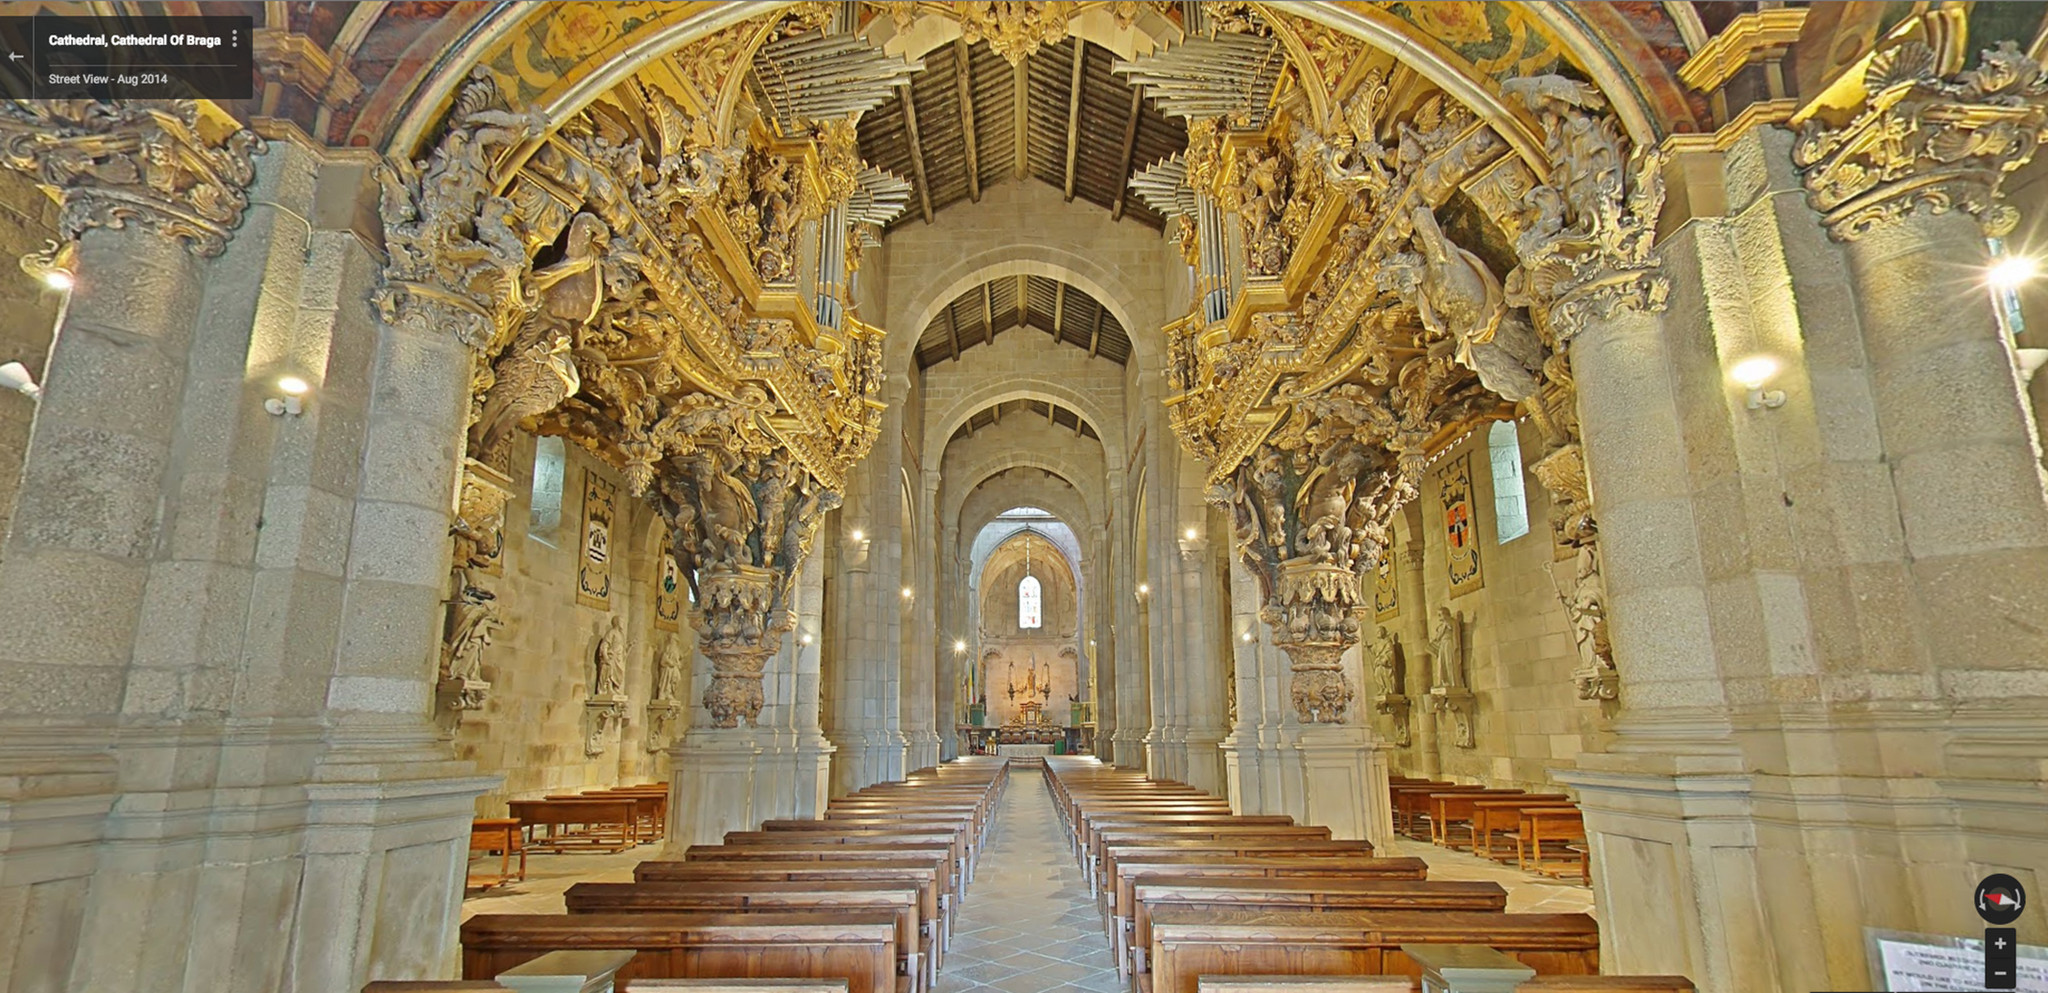 Sé Catedral de Braga.jpg